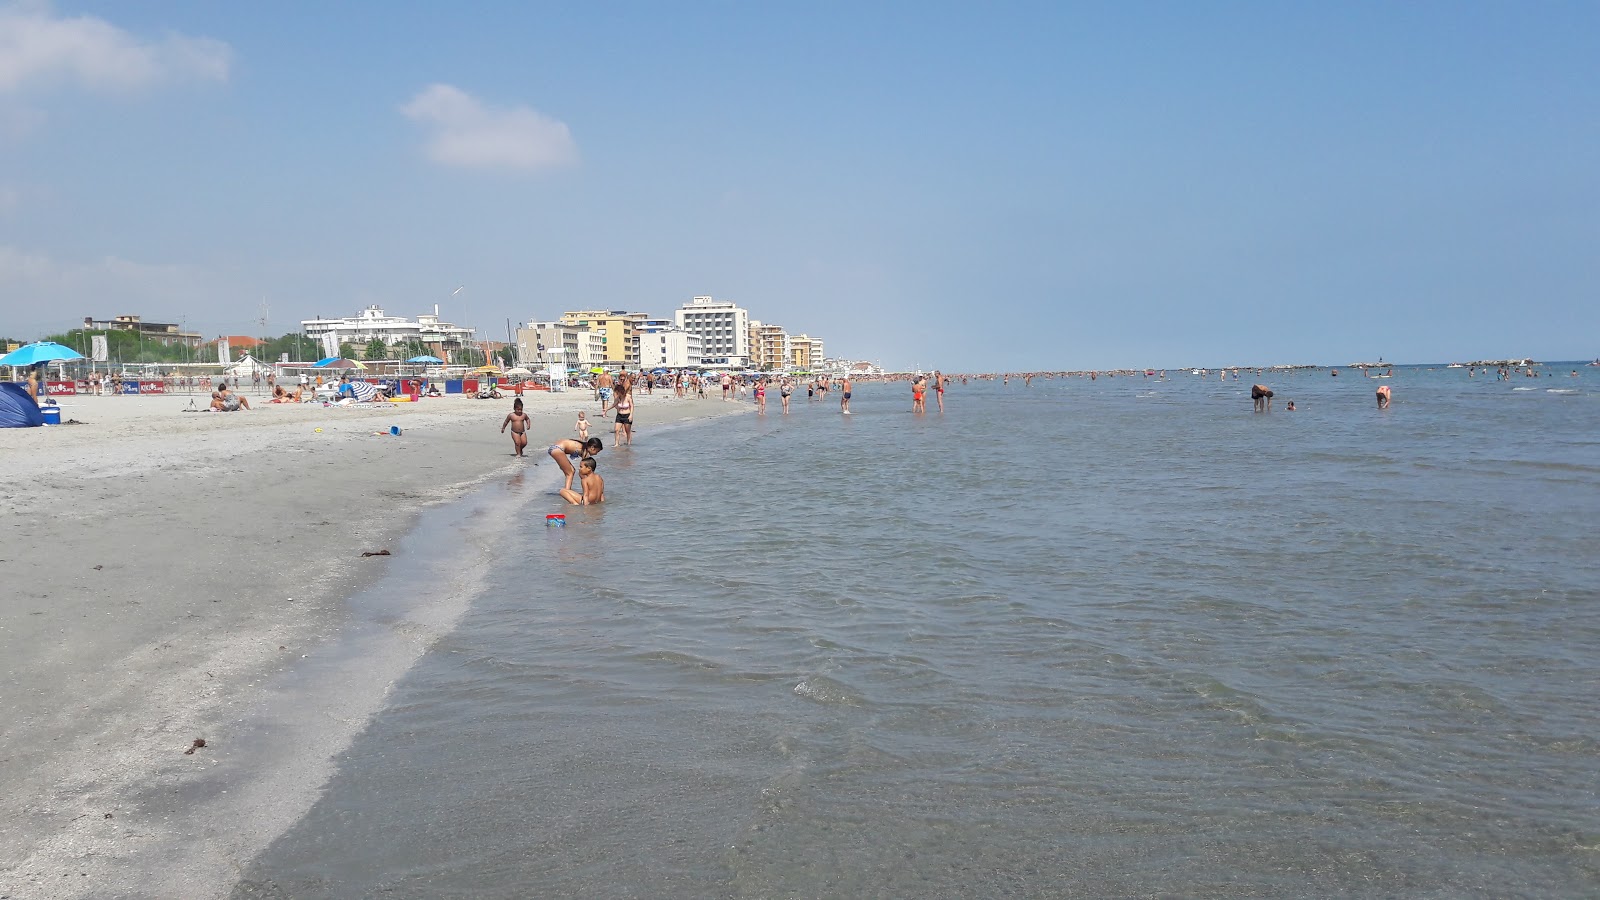 Foto van Spiaggia Libera Igea Marina met recht en lang